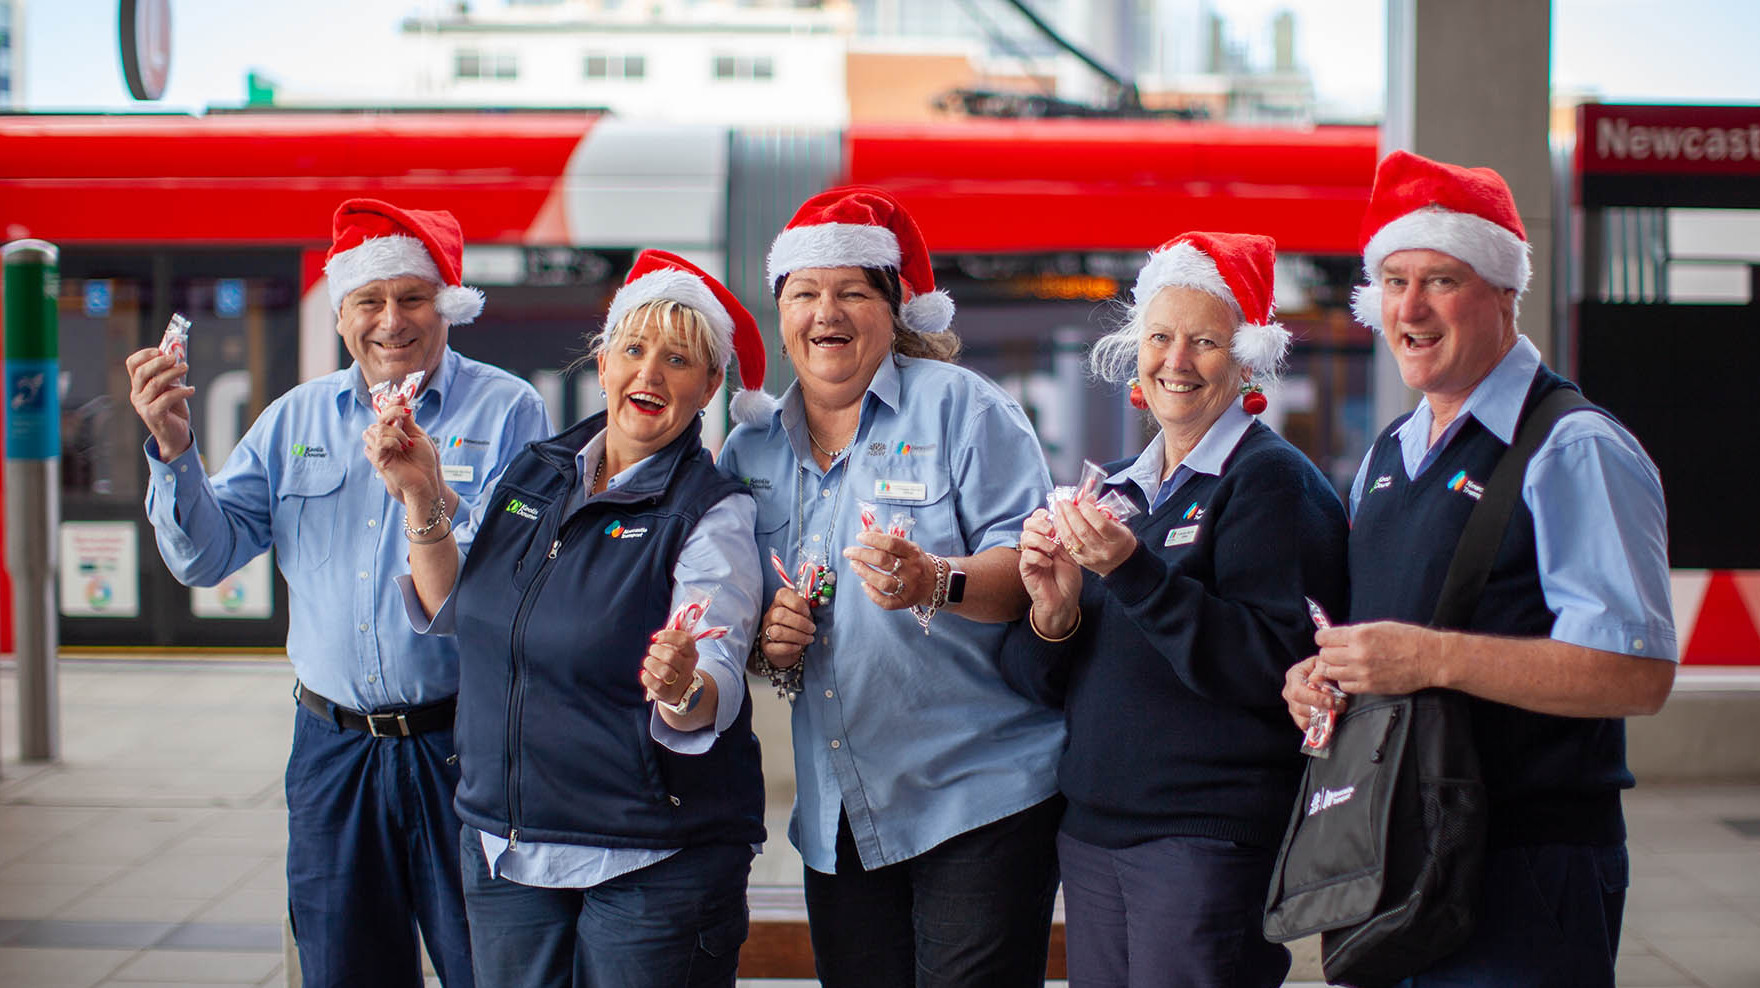 Newcastle Transport employees enjoying christmas